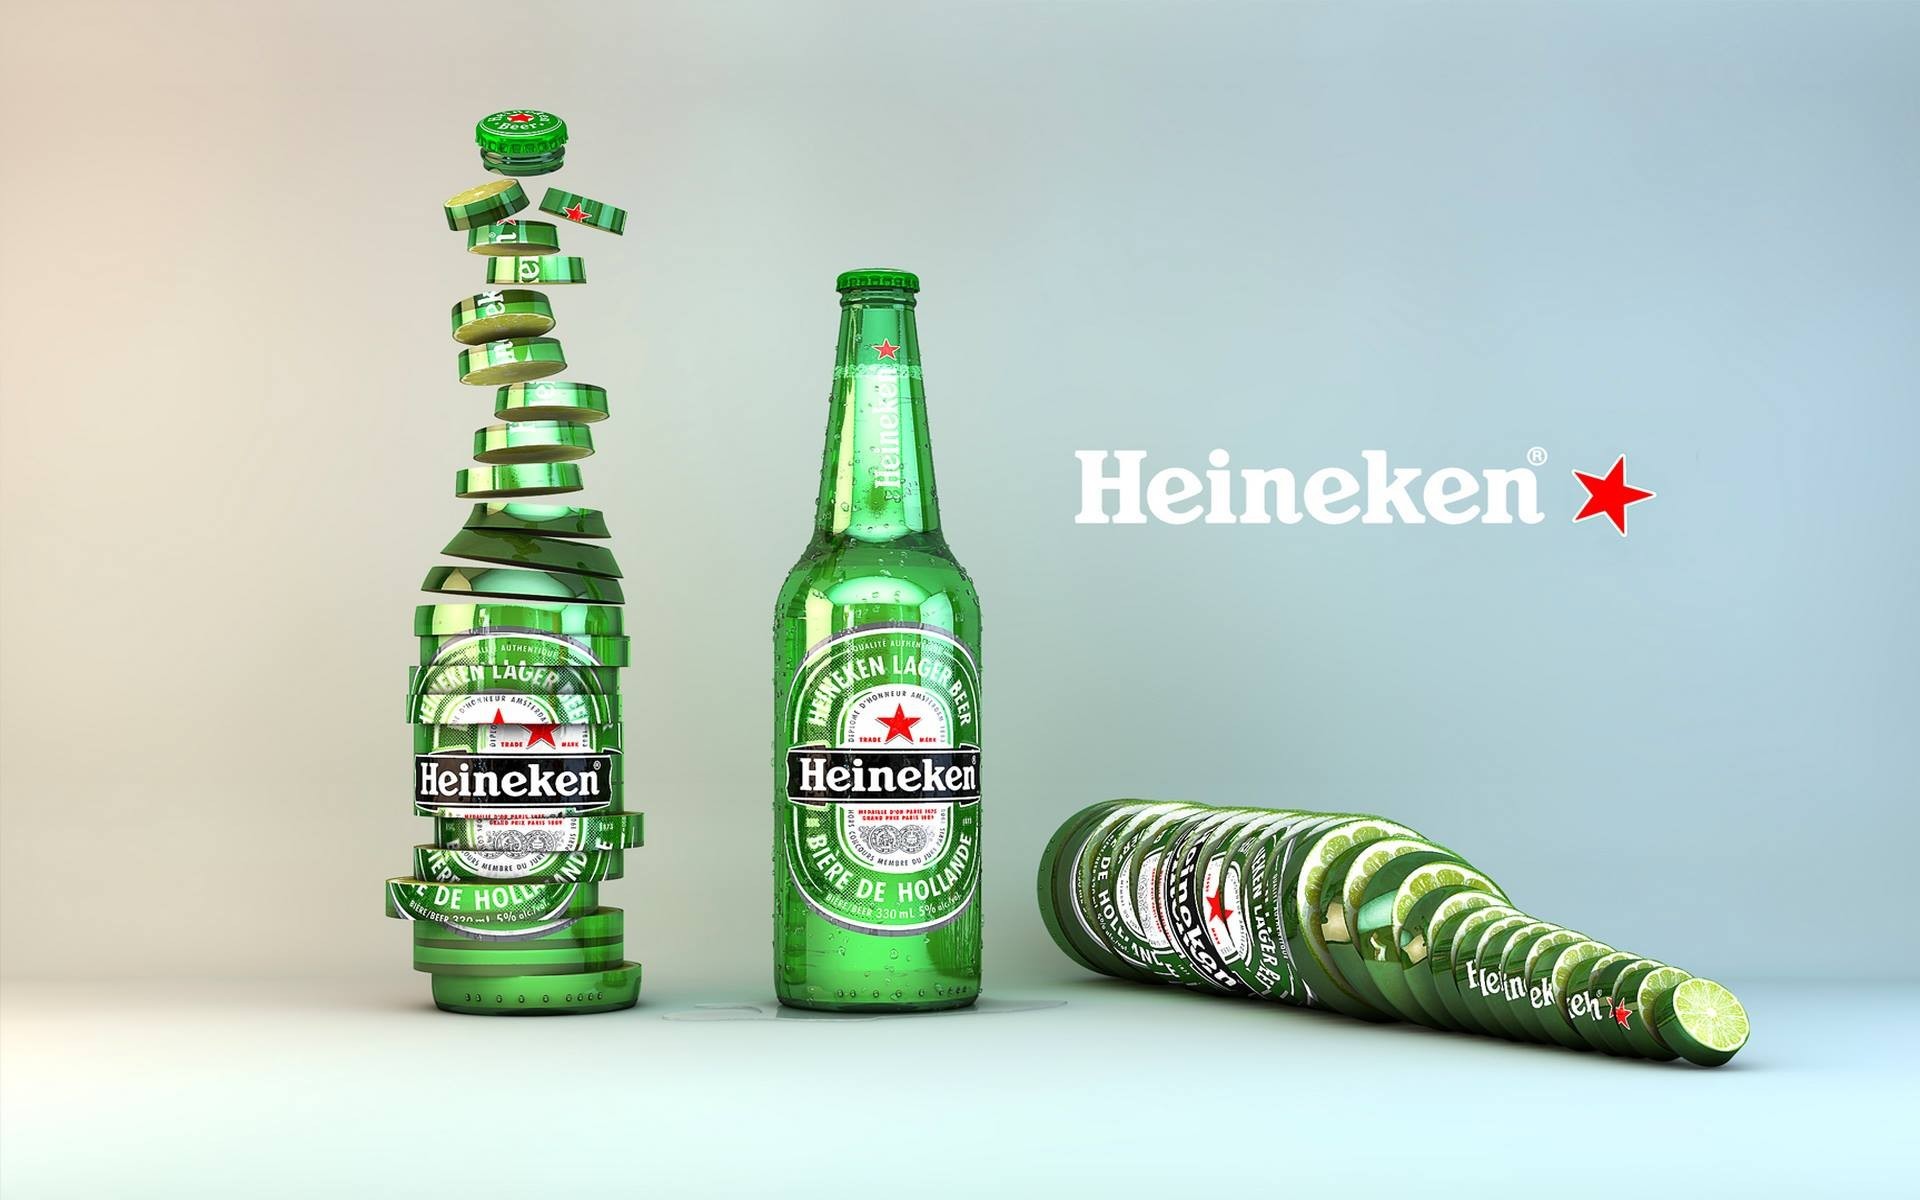 General 1920x1200 CGI beer Heineken minimalism advertisements simple background alcohol bottles